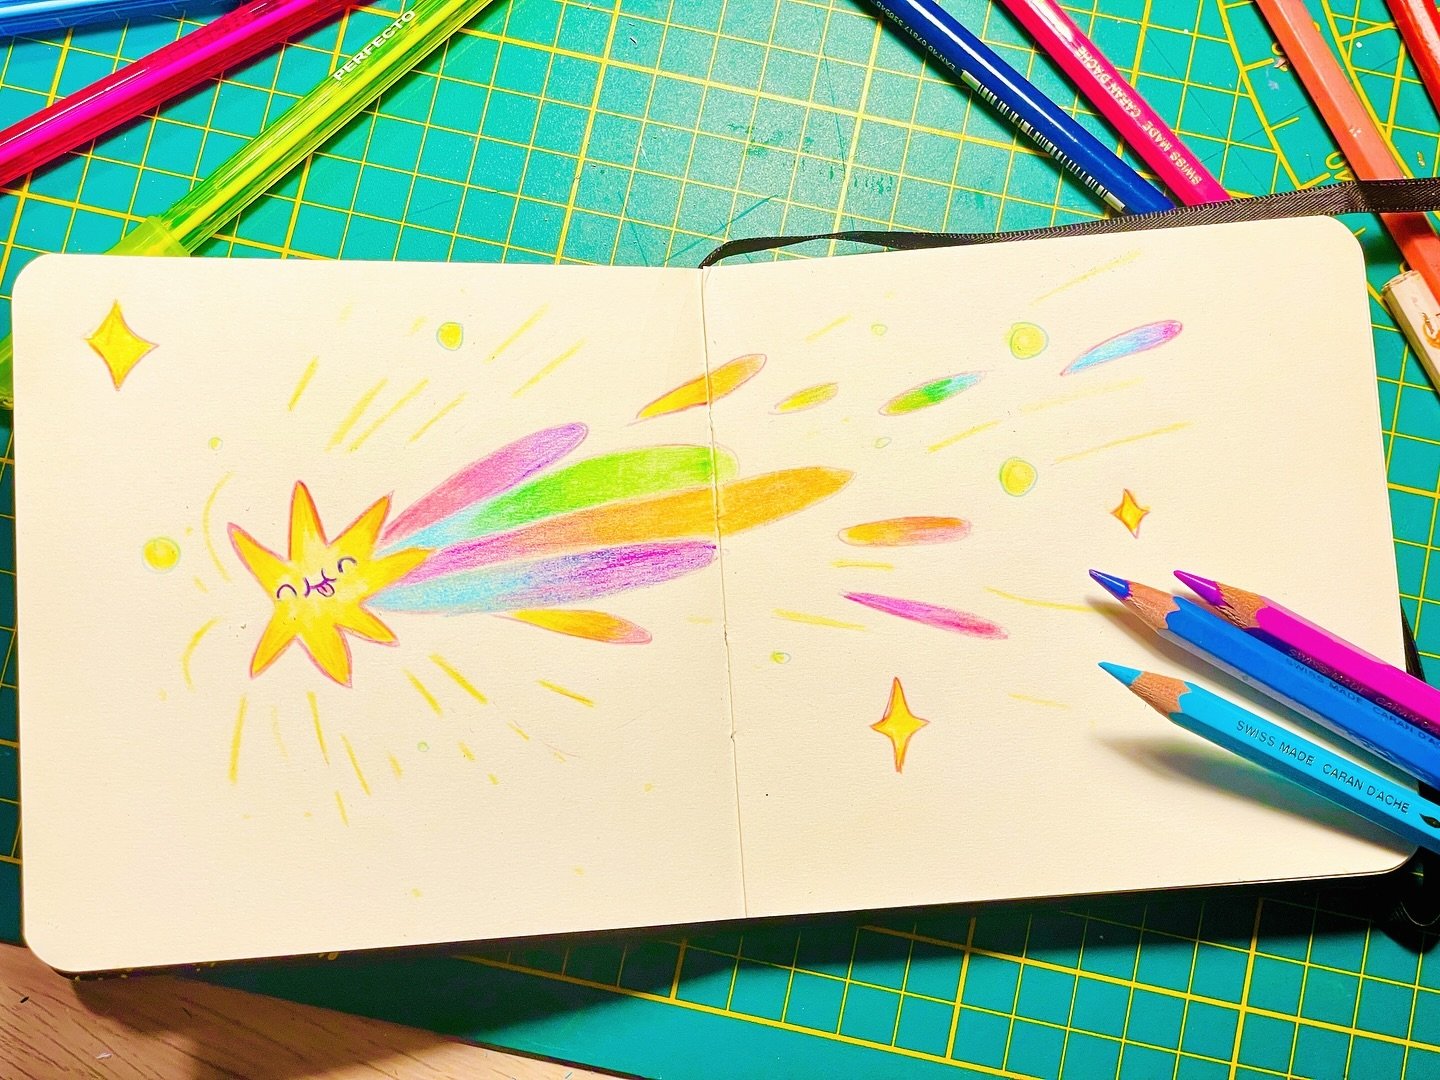 Make a wish! 💫 🌟 🌈 

#doodle #sketchbook #quickillustration #shootingstar #drawing #illustration